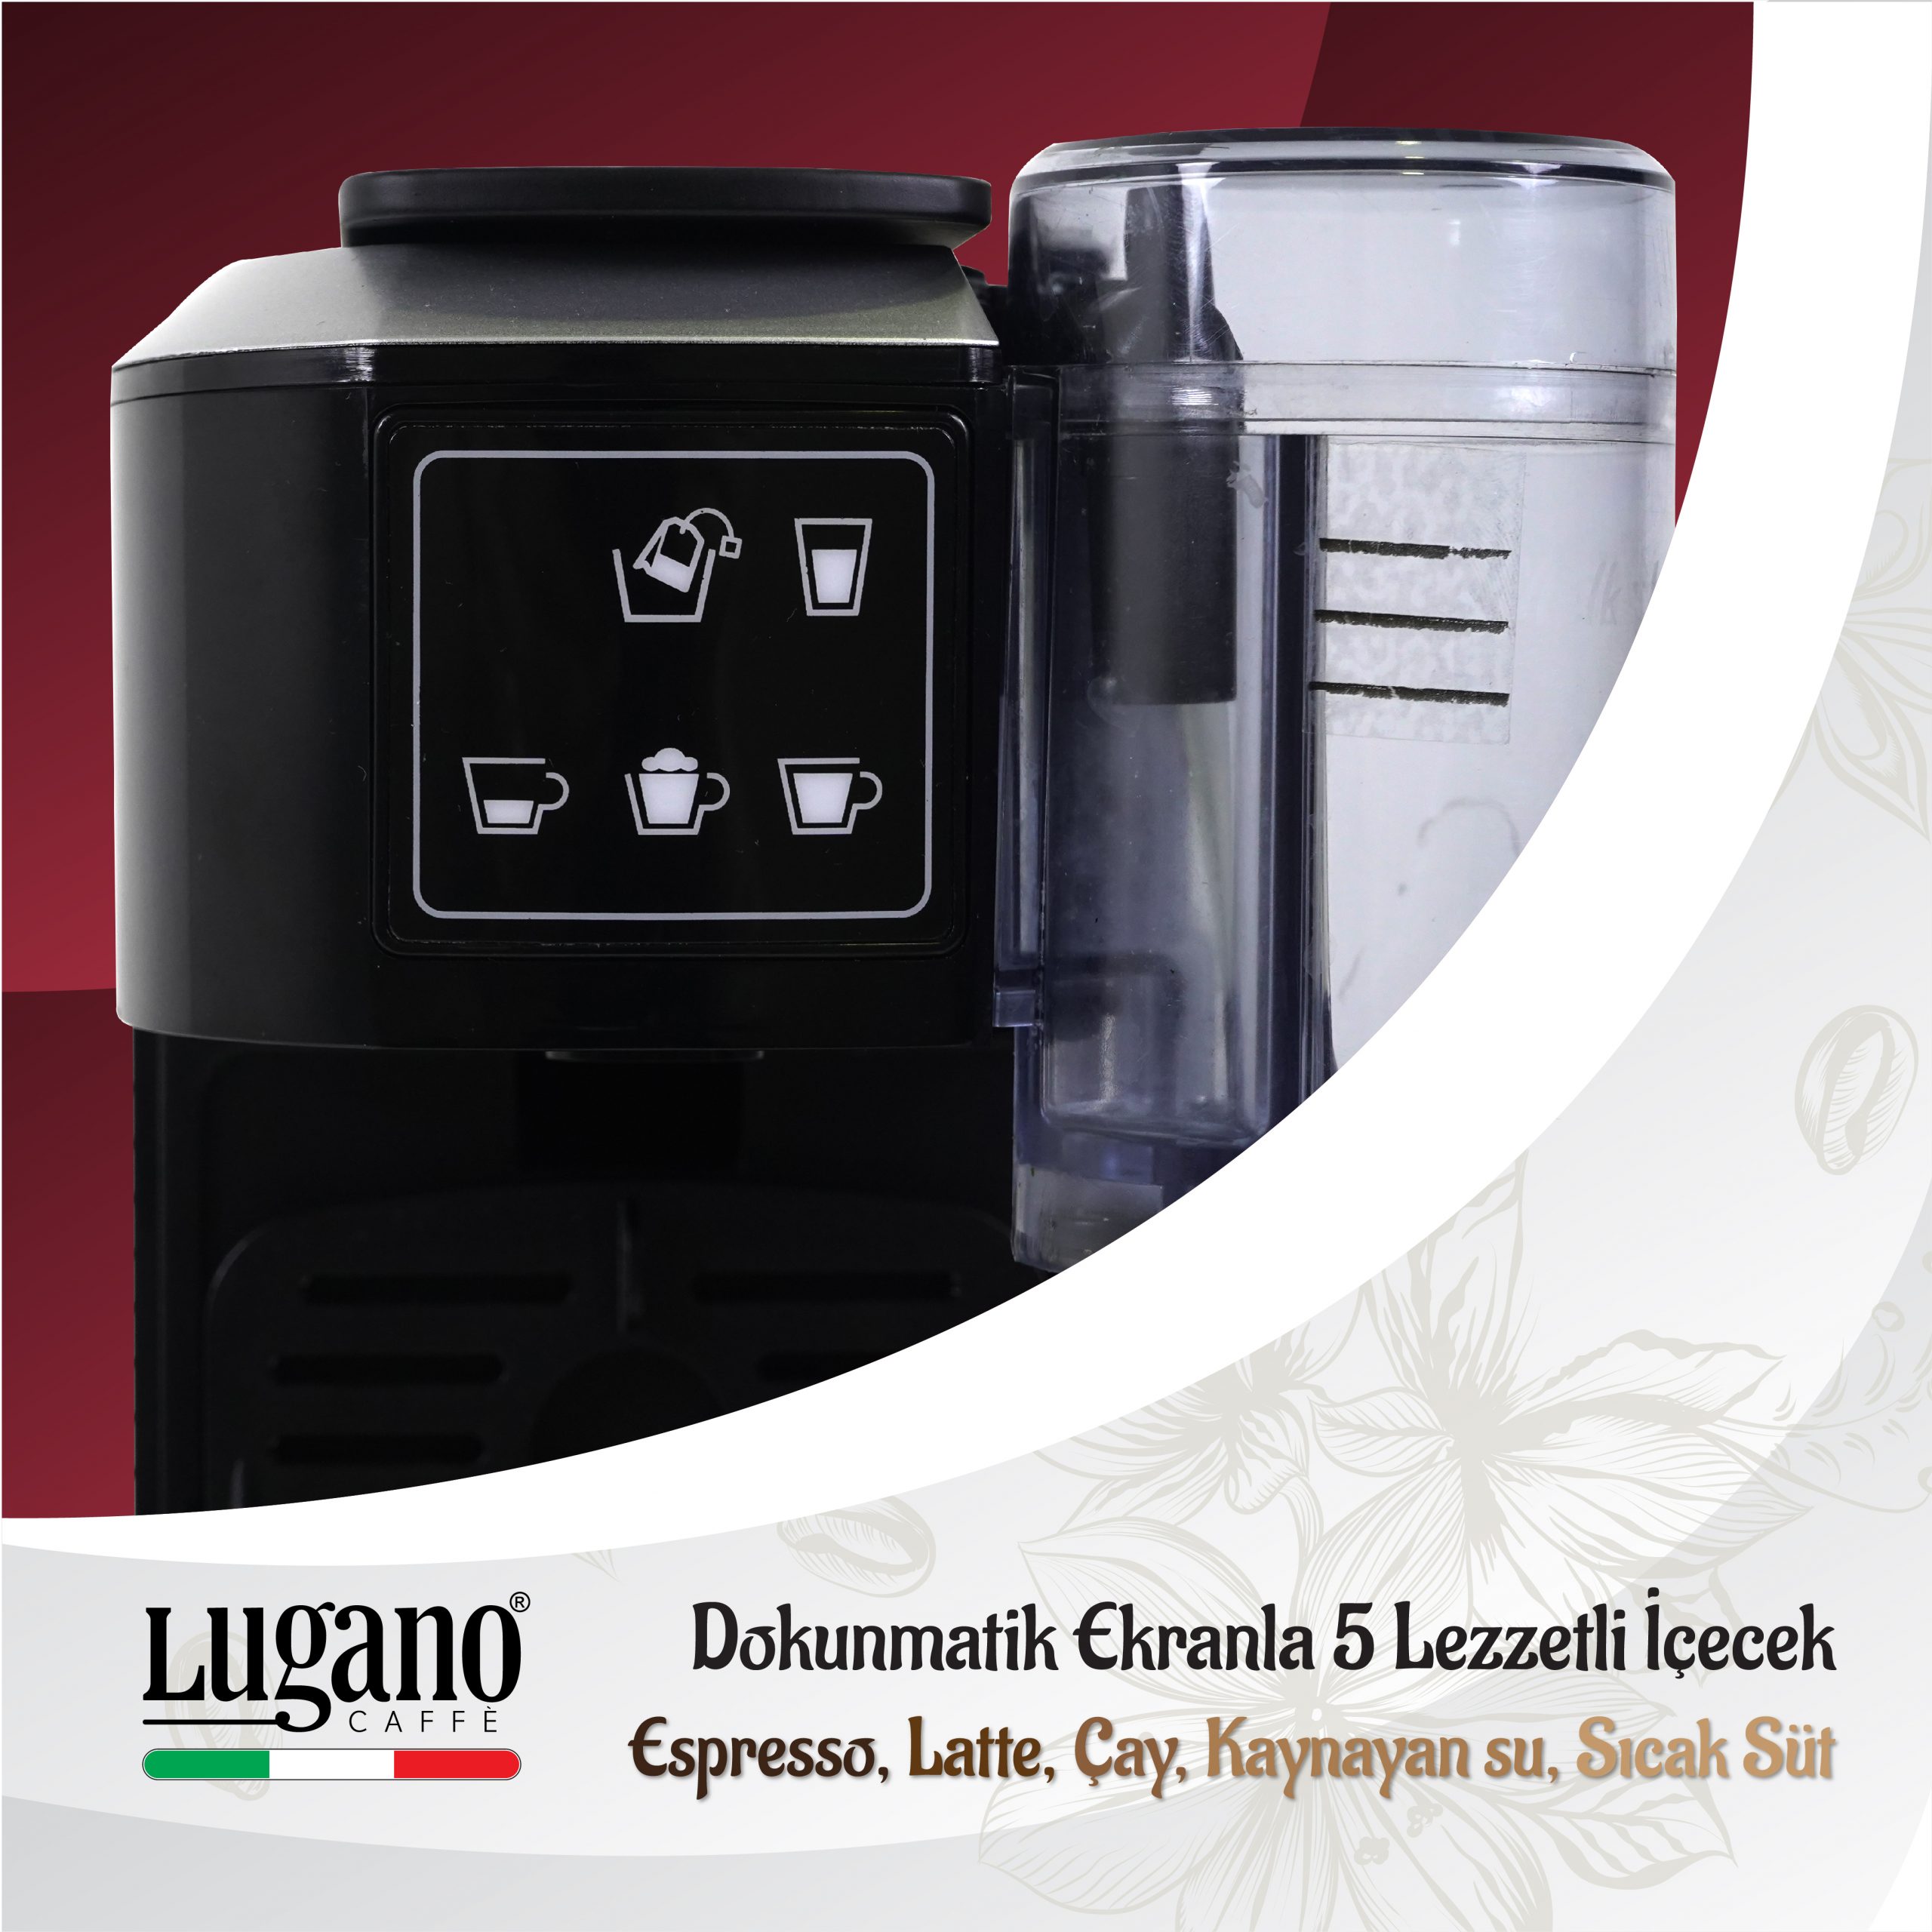 Lugano Creativa Kahve Makinesi